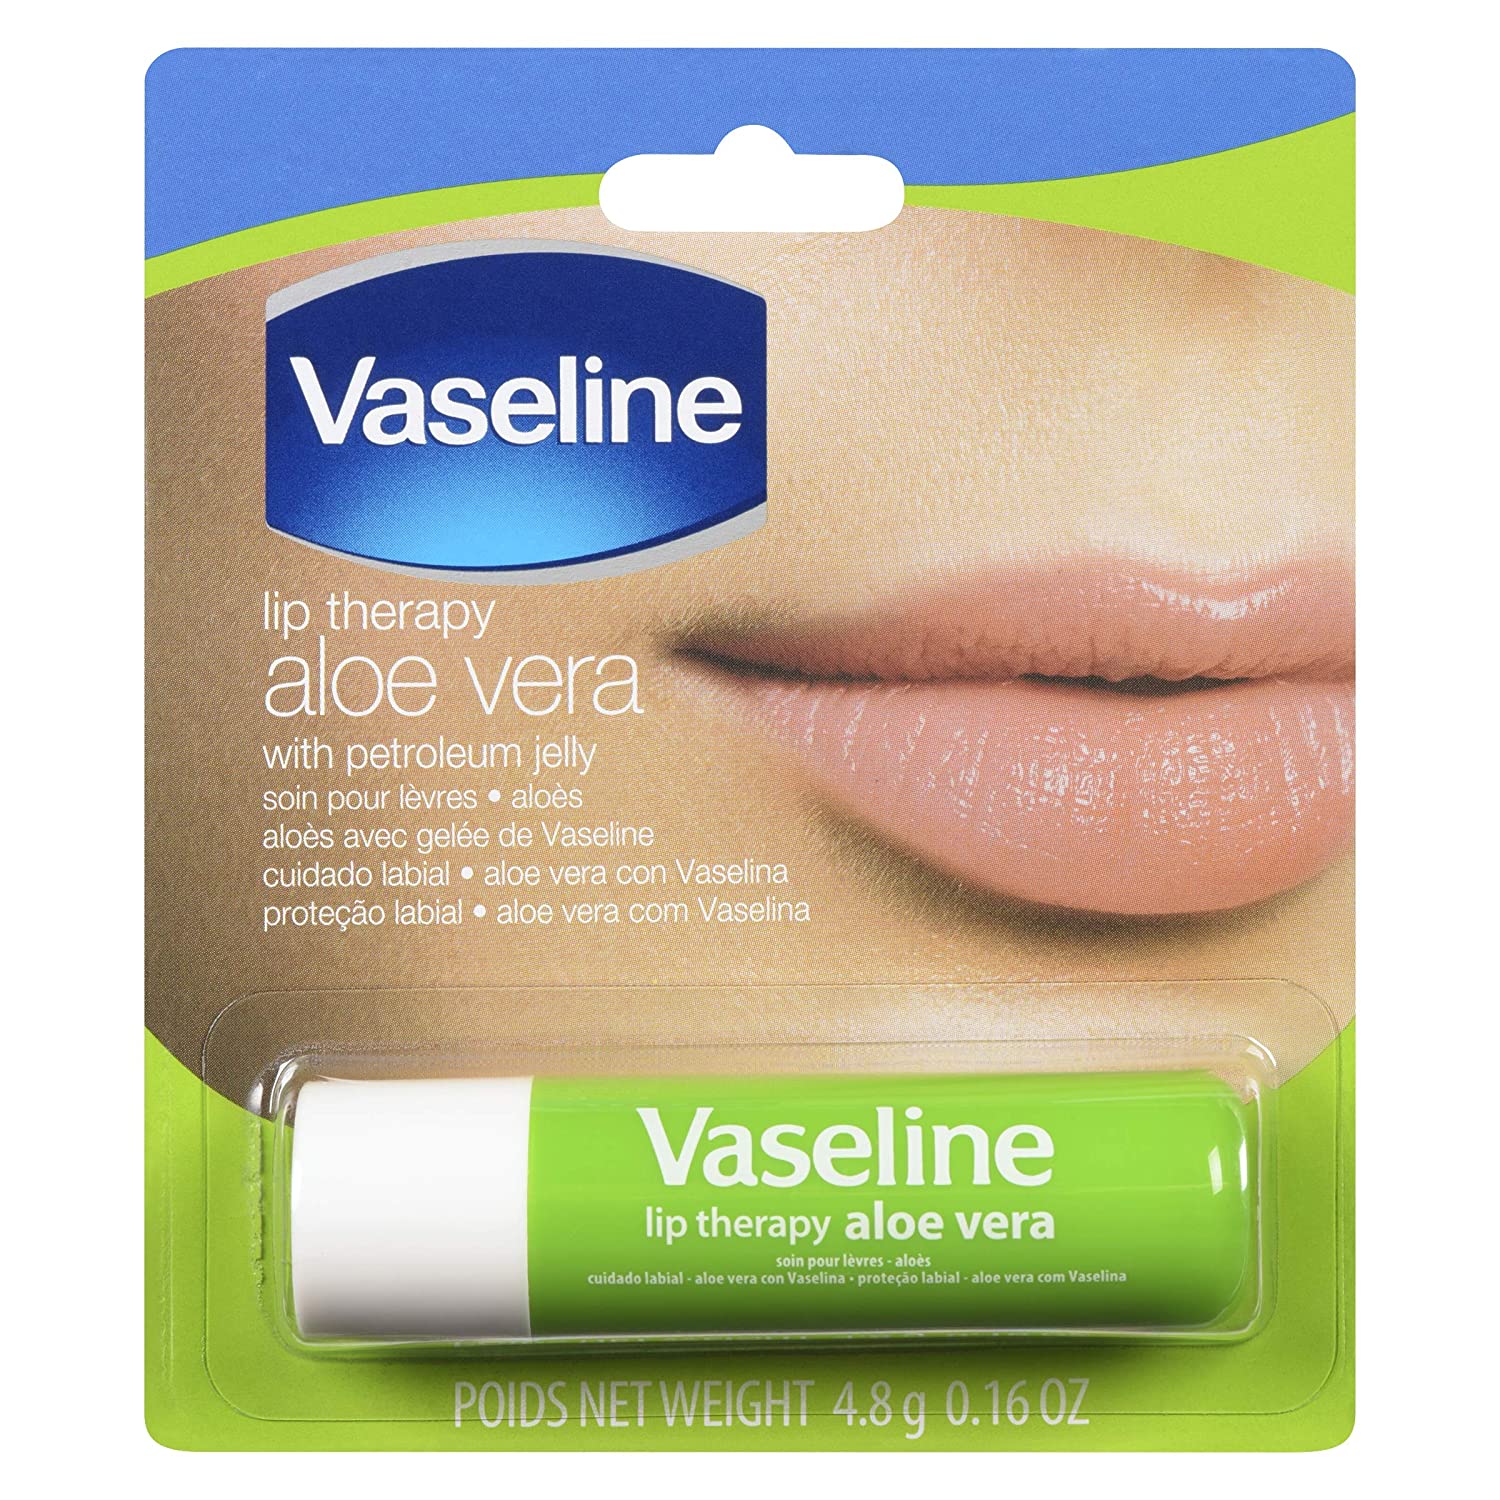 S518 Vaseline Lip Therapy Aloe Vera 0.18oz x 1pc